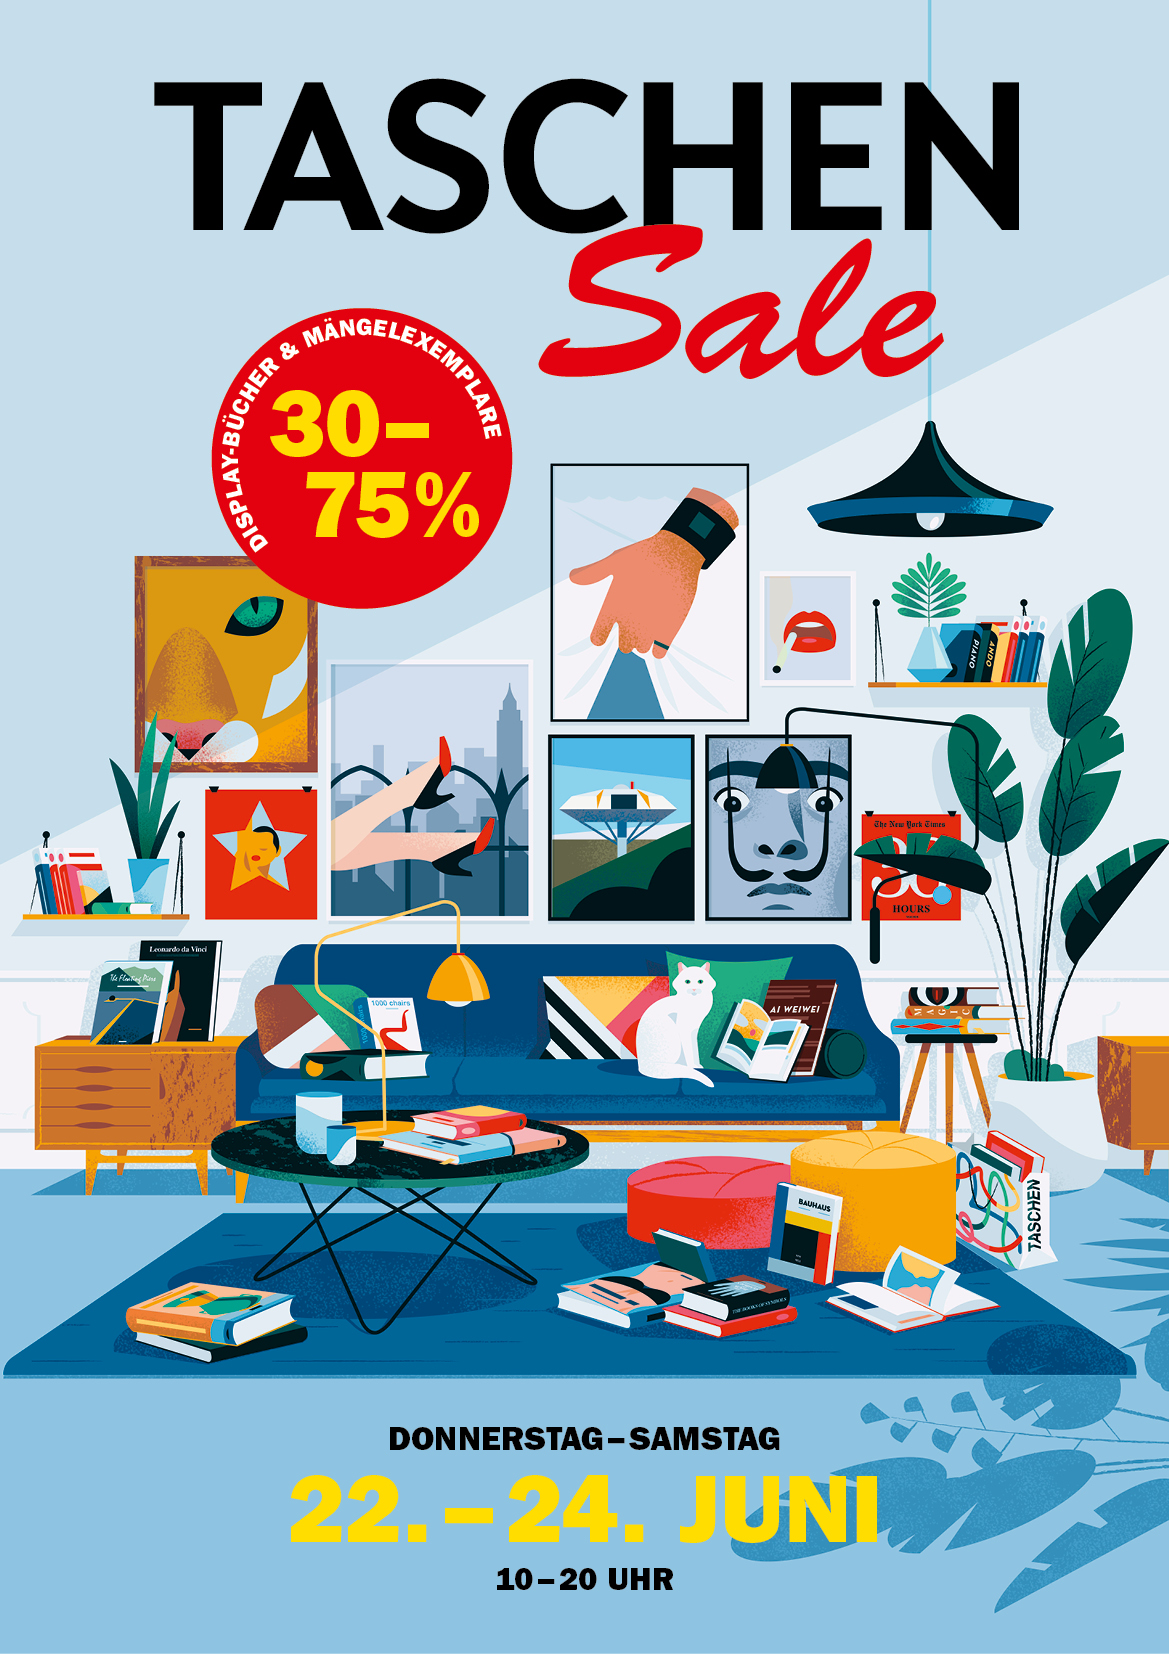 Taschen Sale - 30 - 75% reduziert | Zwischen dem 22.-24. Juni 2017 